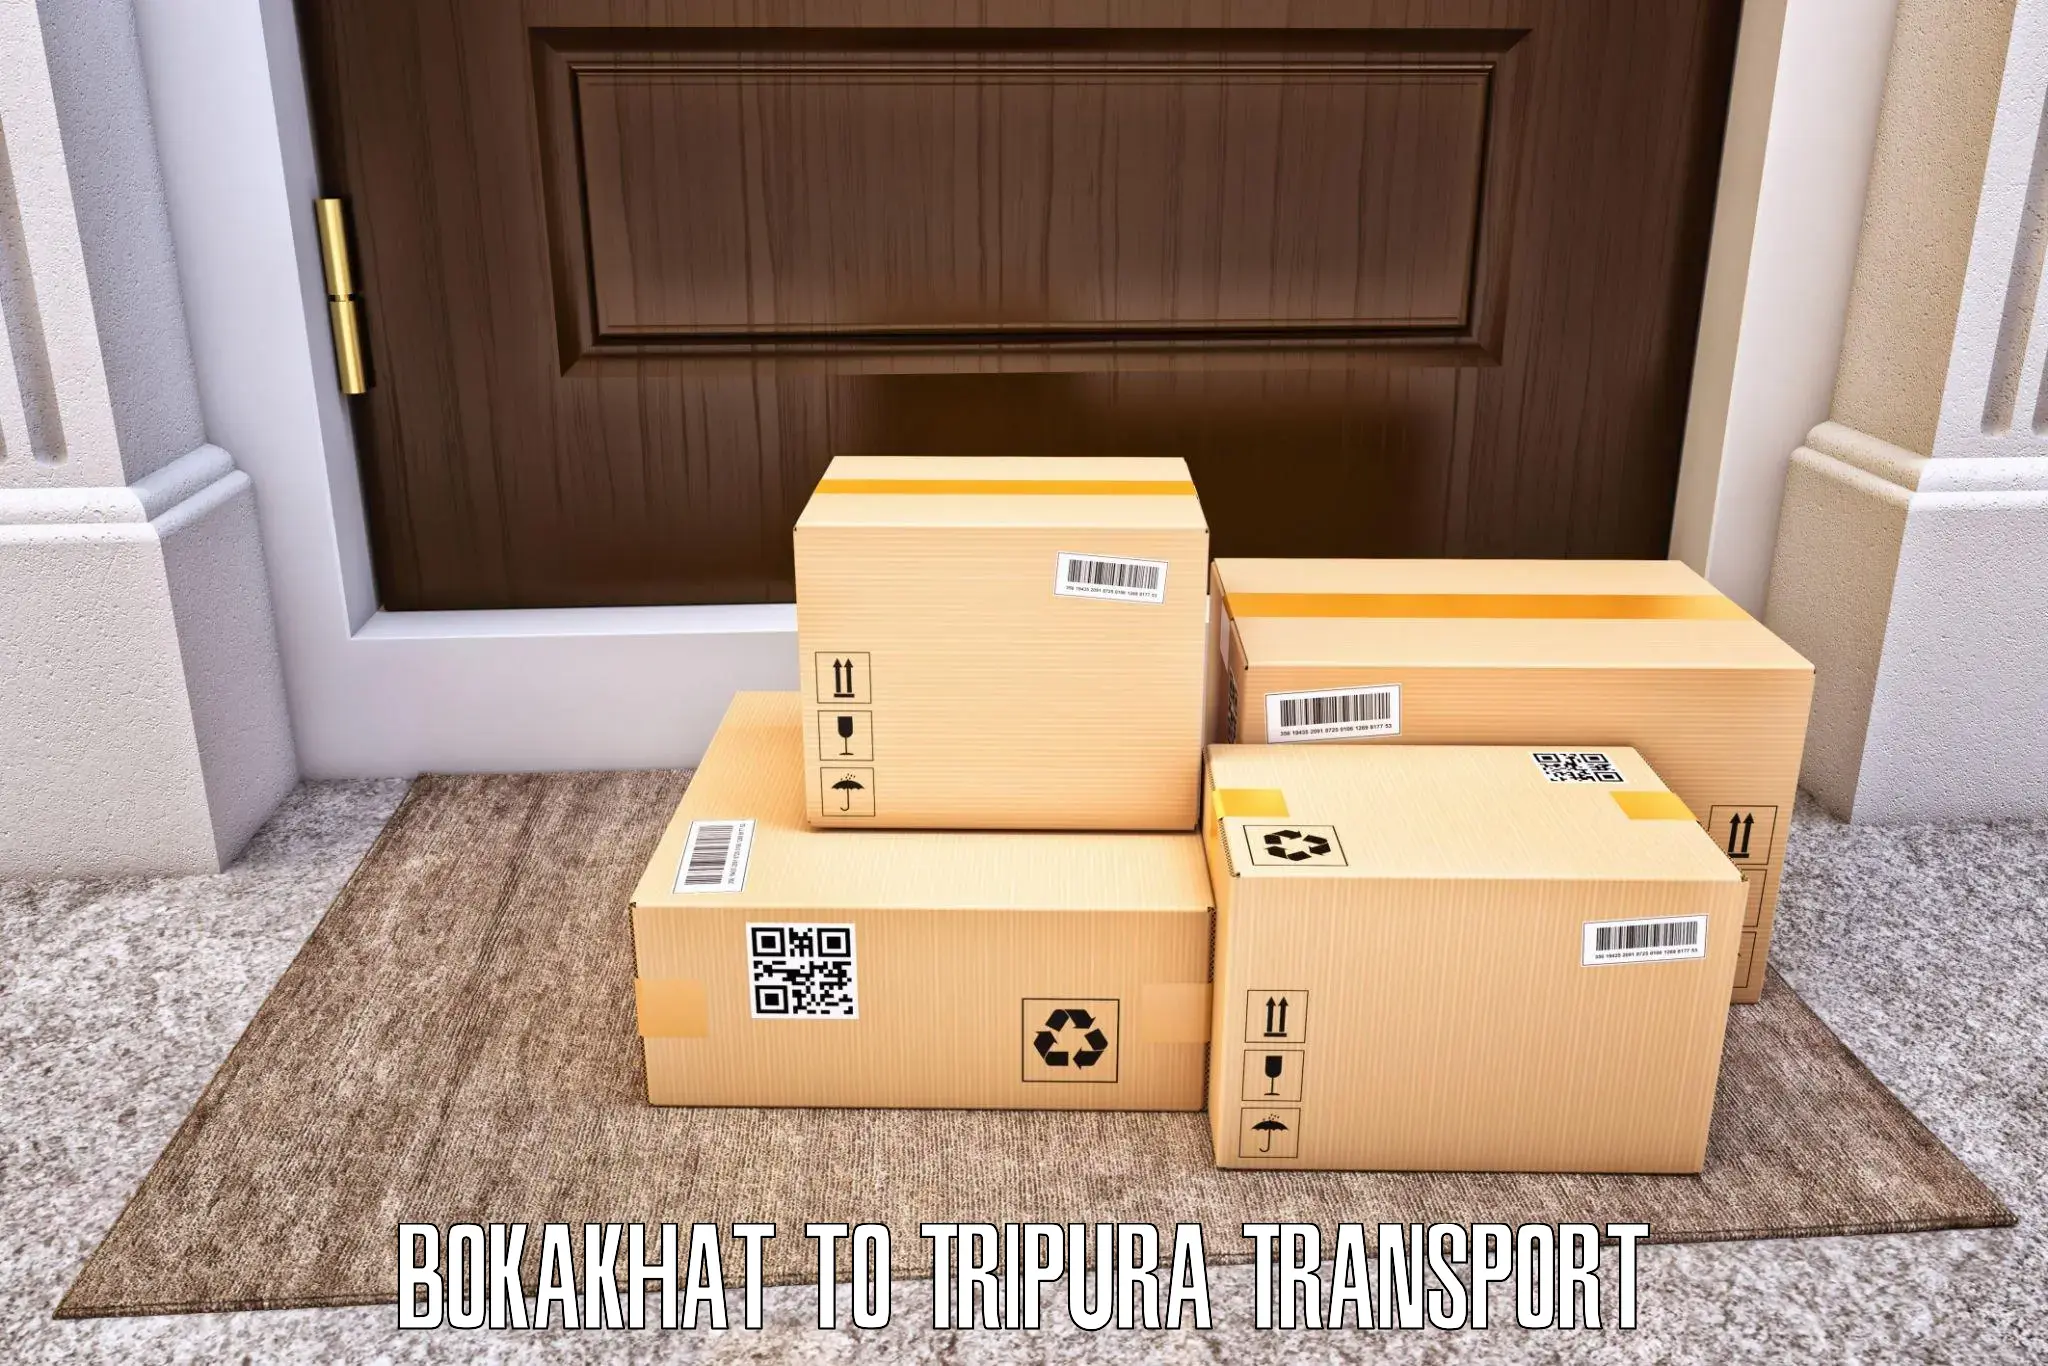 Furniture transport service Bokakhat to Manughat